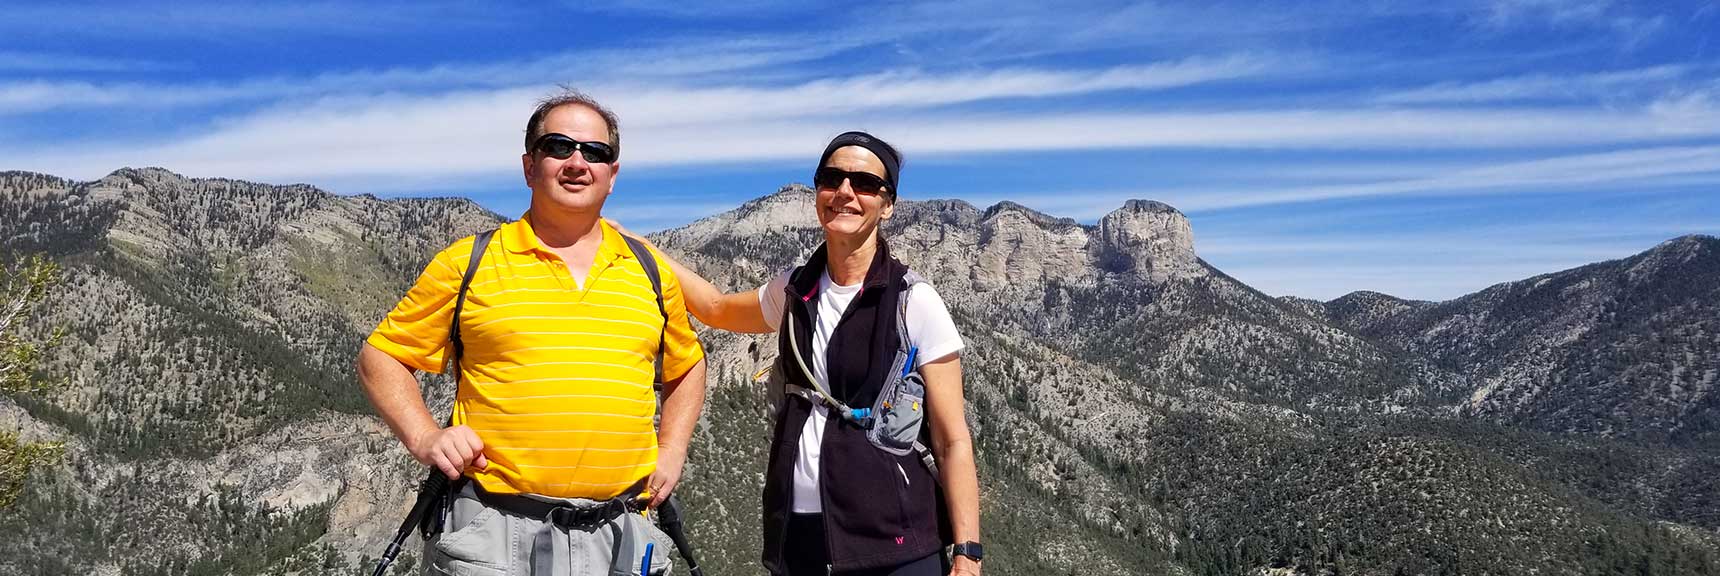 Cathedral Rock Summit Achieved in Mt. Charleston Wilderness, Nevada